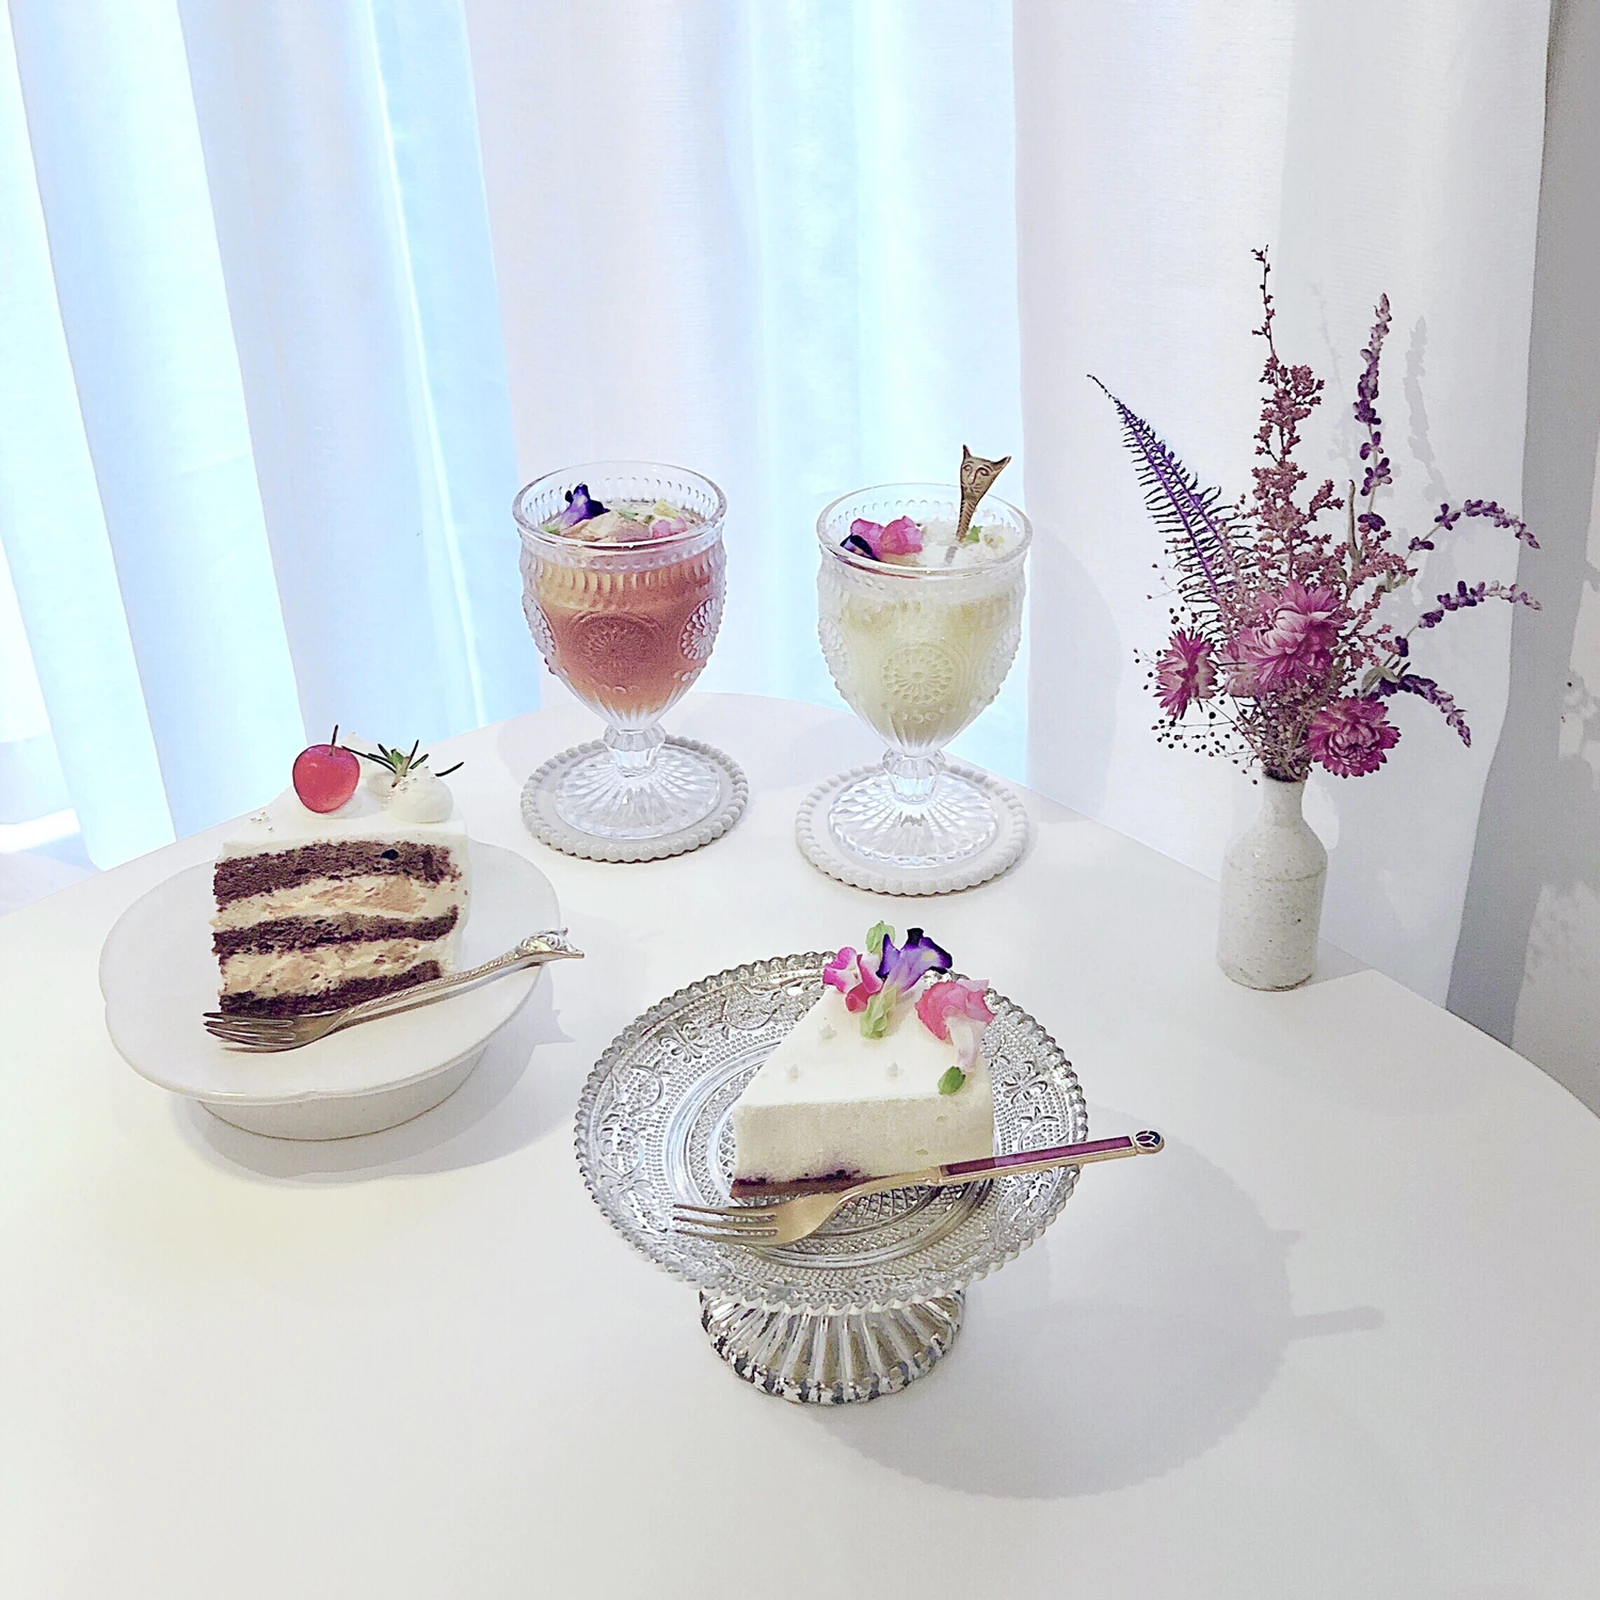 ケーキが絶品 下北沢 シモキタシマイ が素敵すぎる Yu カフェ男子が投稿したフォトブック Lemon8